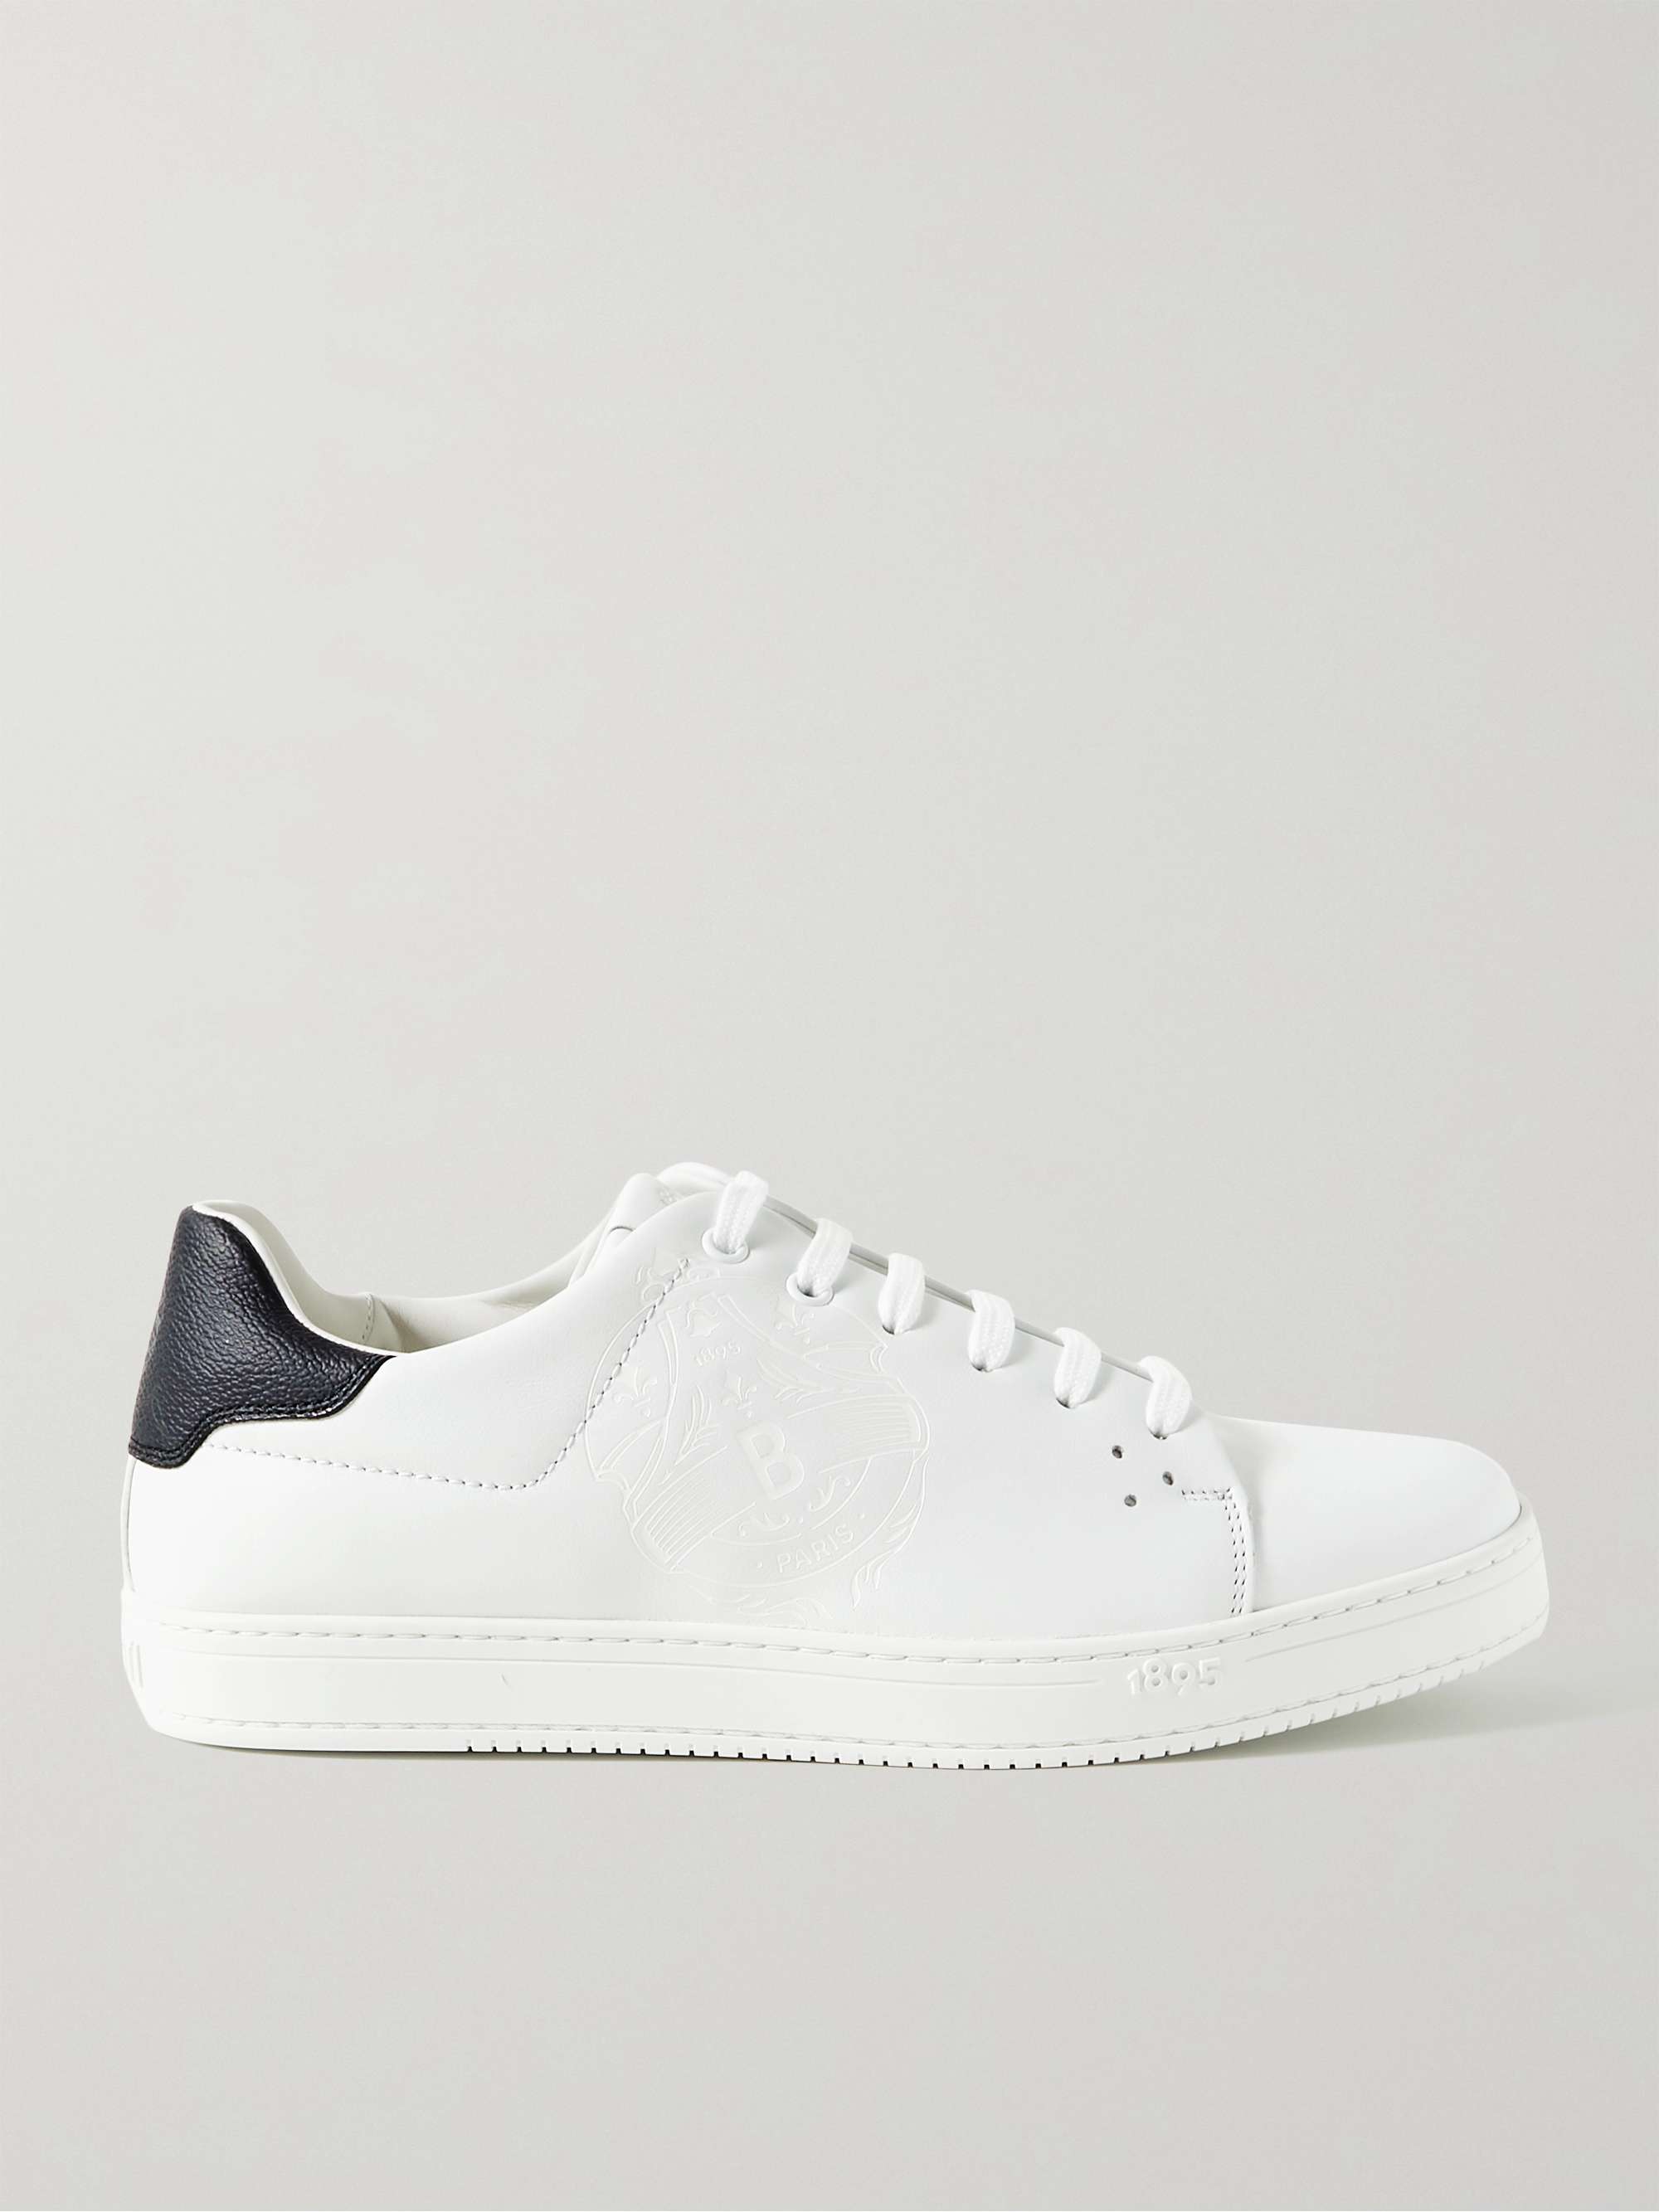 Off-white Eden Scritto Leather Sneakers | BERLUTI | MR PORTER